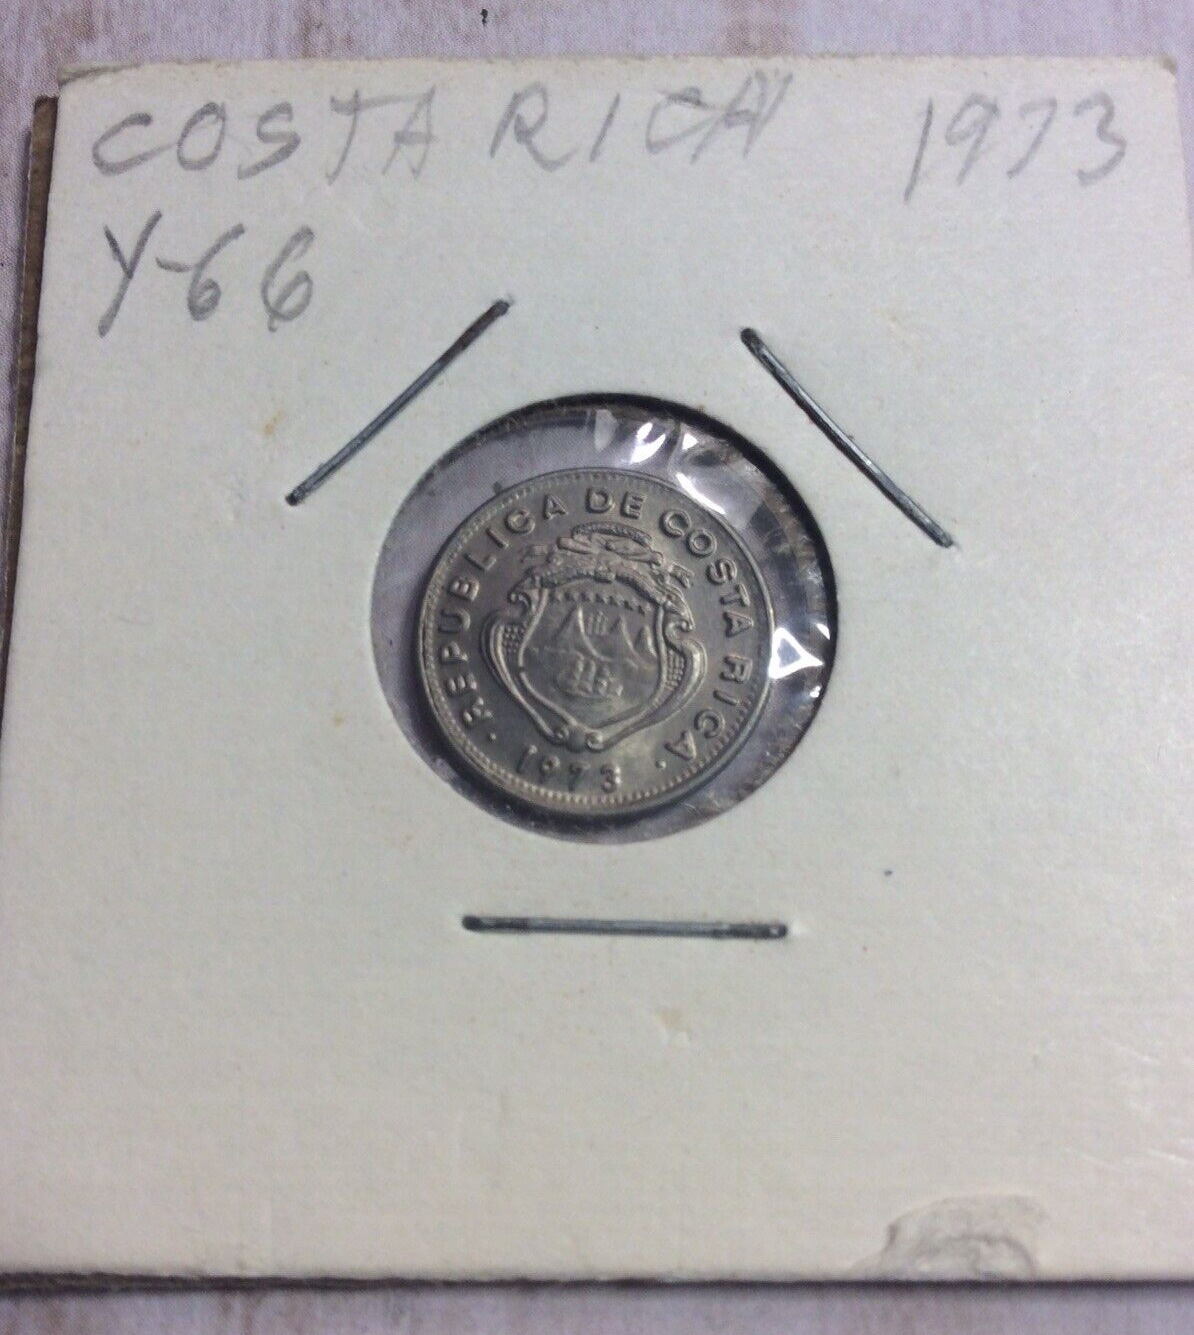 1973 Republica De Costa Rica 5 Centimos Coin